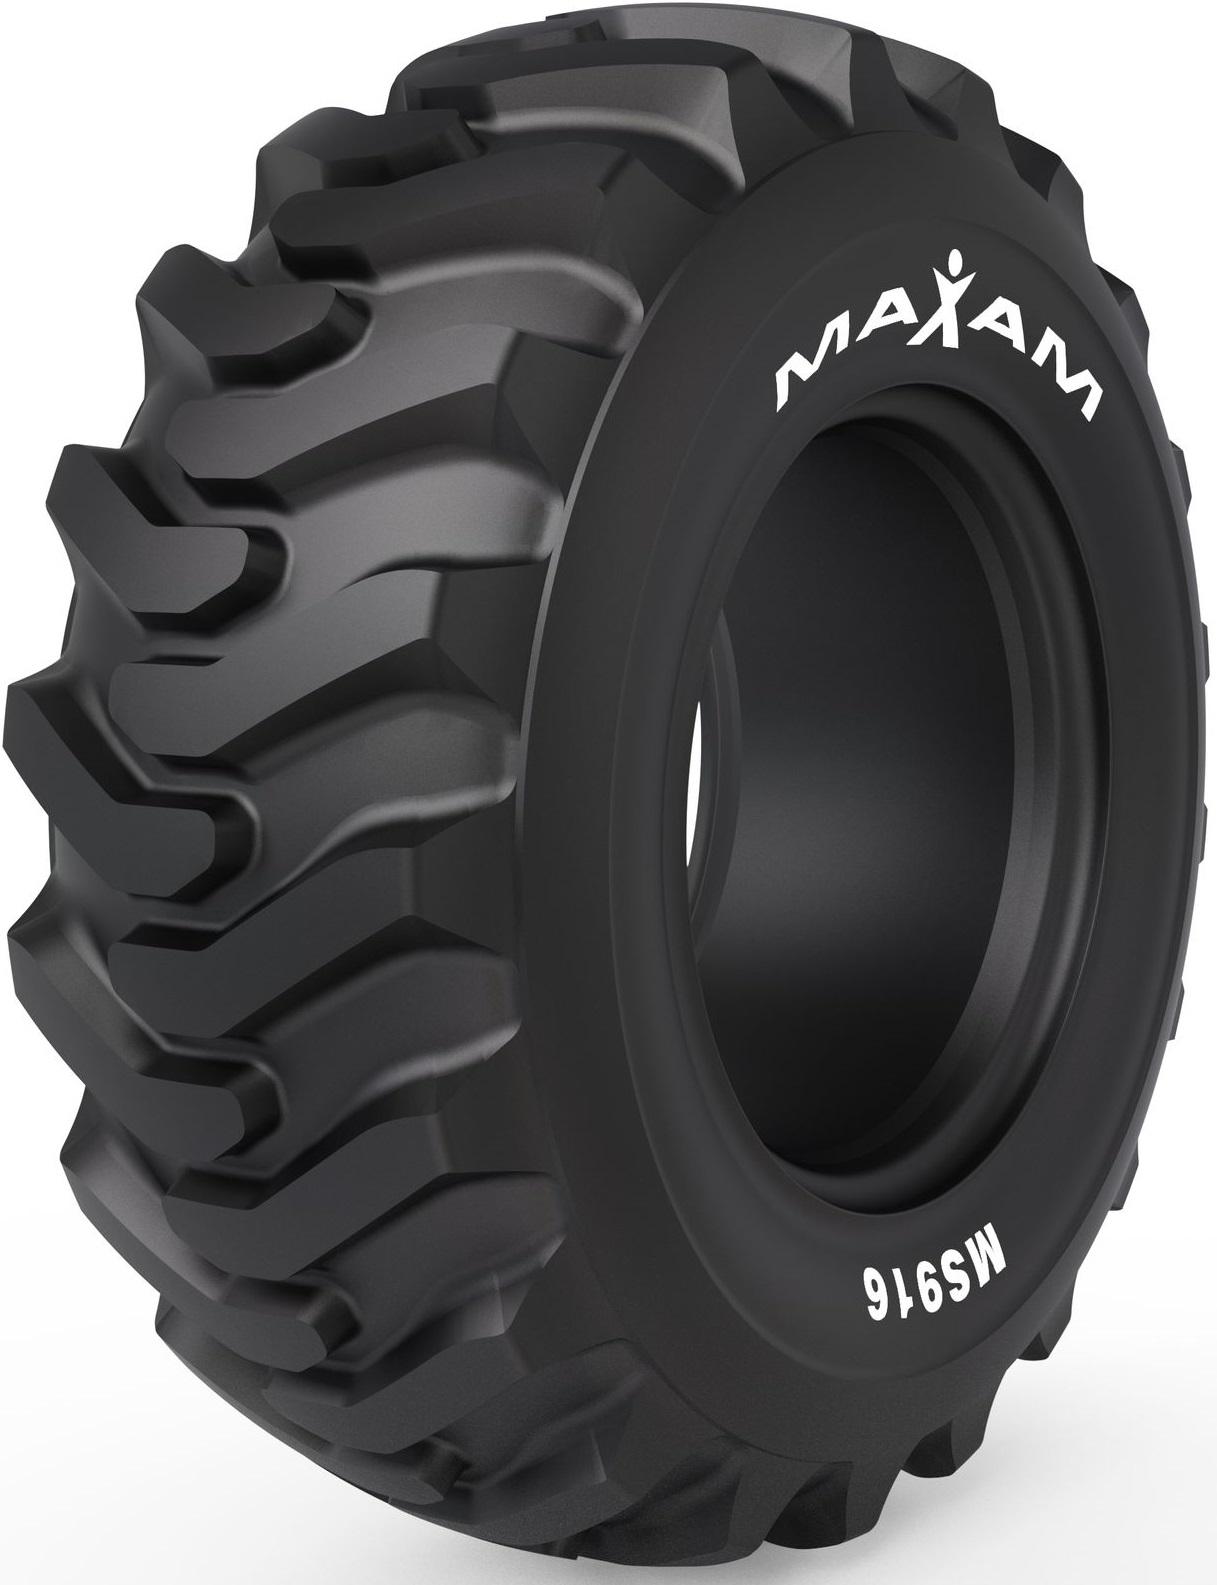 Maxam MS916 Tyres